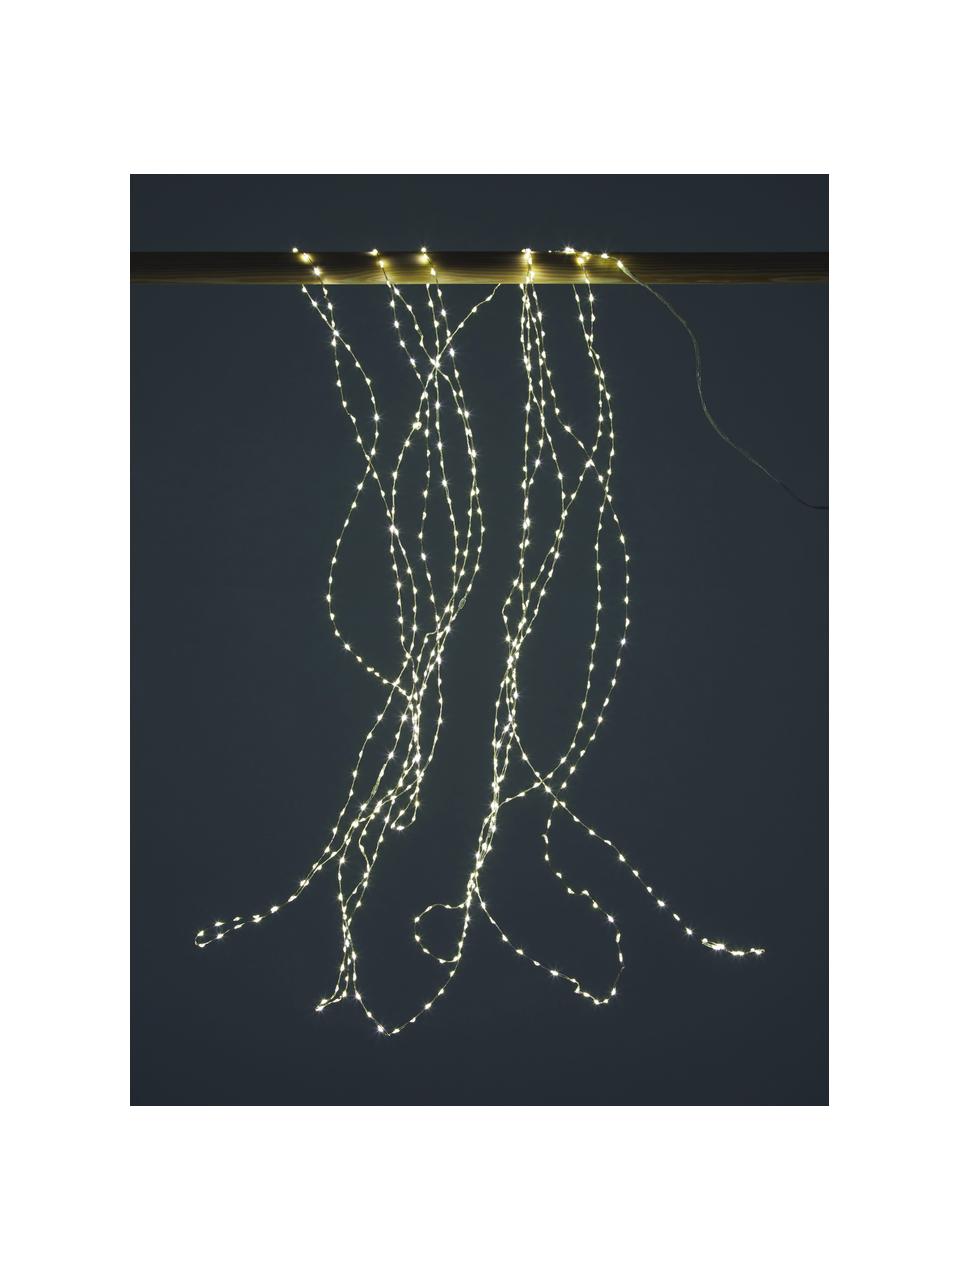 Łańcuch świetlny LED Bellon, dł. 1400 cm, Tworzywo sztuczne, Transparentny, D 900 cm